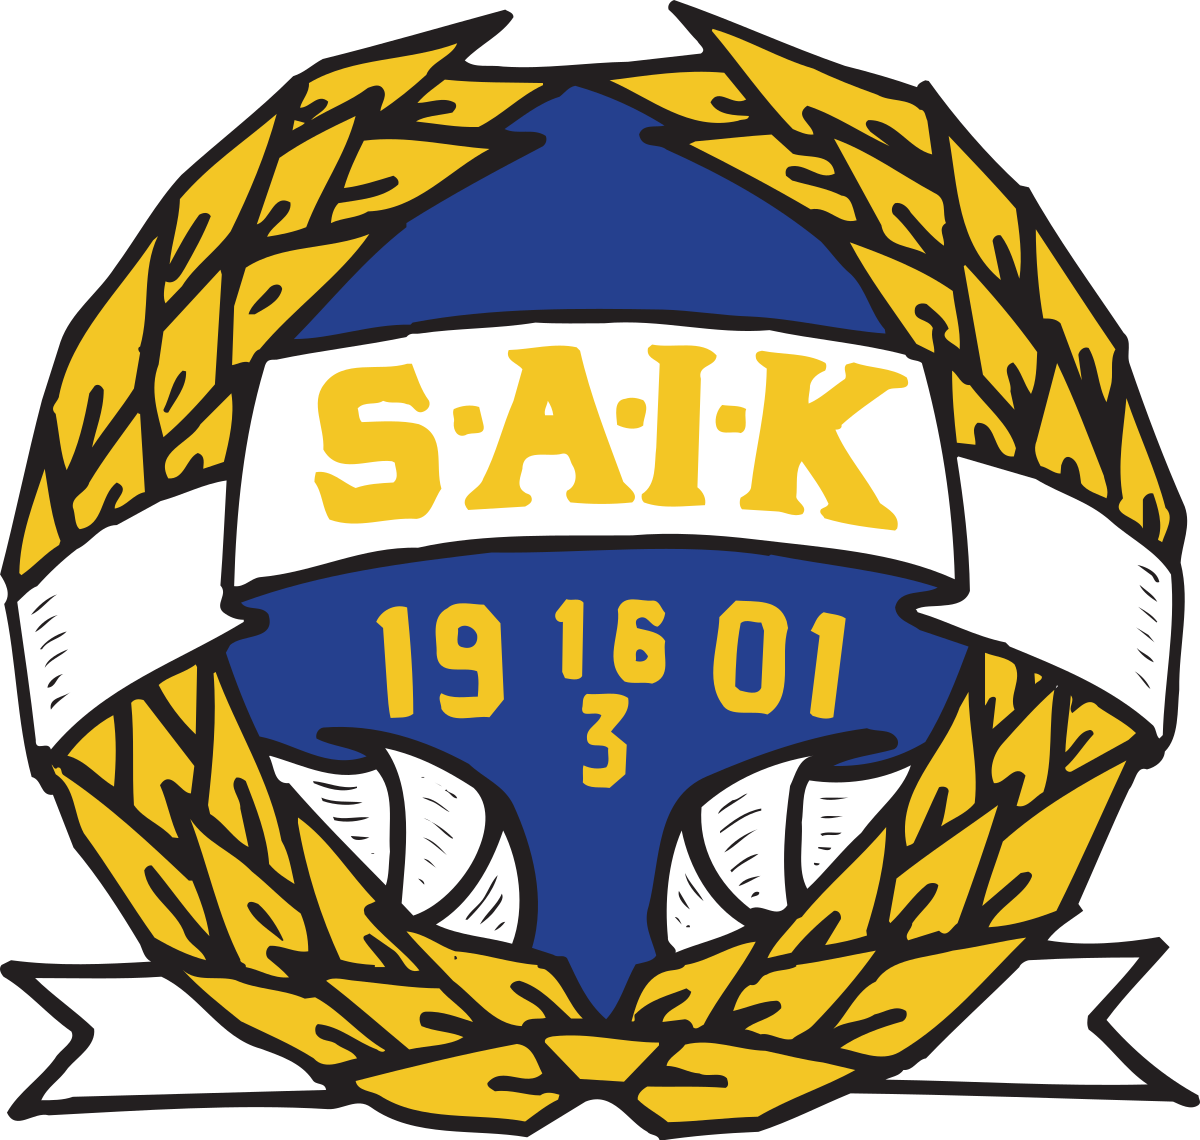 Sandvikens AIK logo